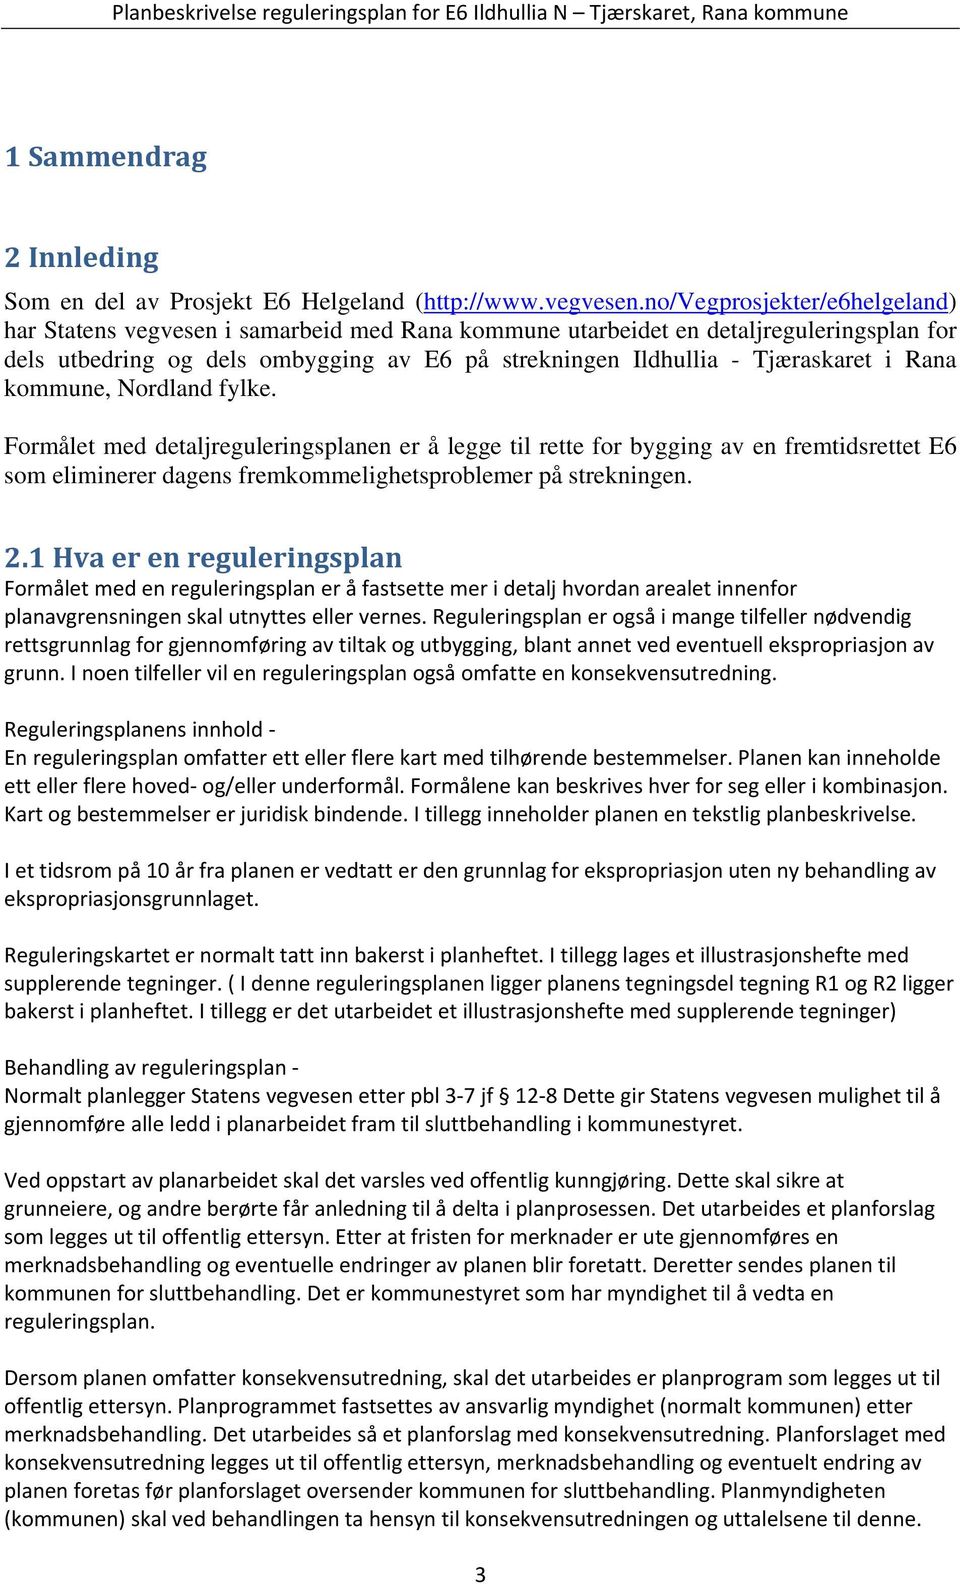 Rana kommune, Nordland fylke. Formålet med detaljreguleringsplanen er å legge til rette for bygging av en fremtidsrettet E6 som eliminerer dagens fremkommelighetsproblemer på strekningen. 2.